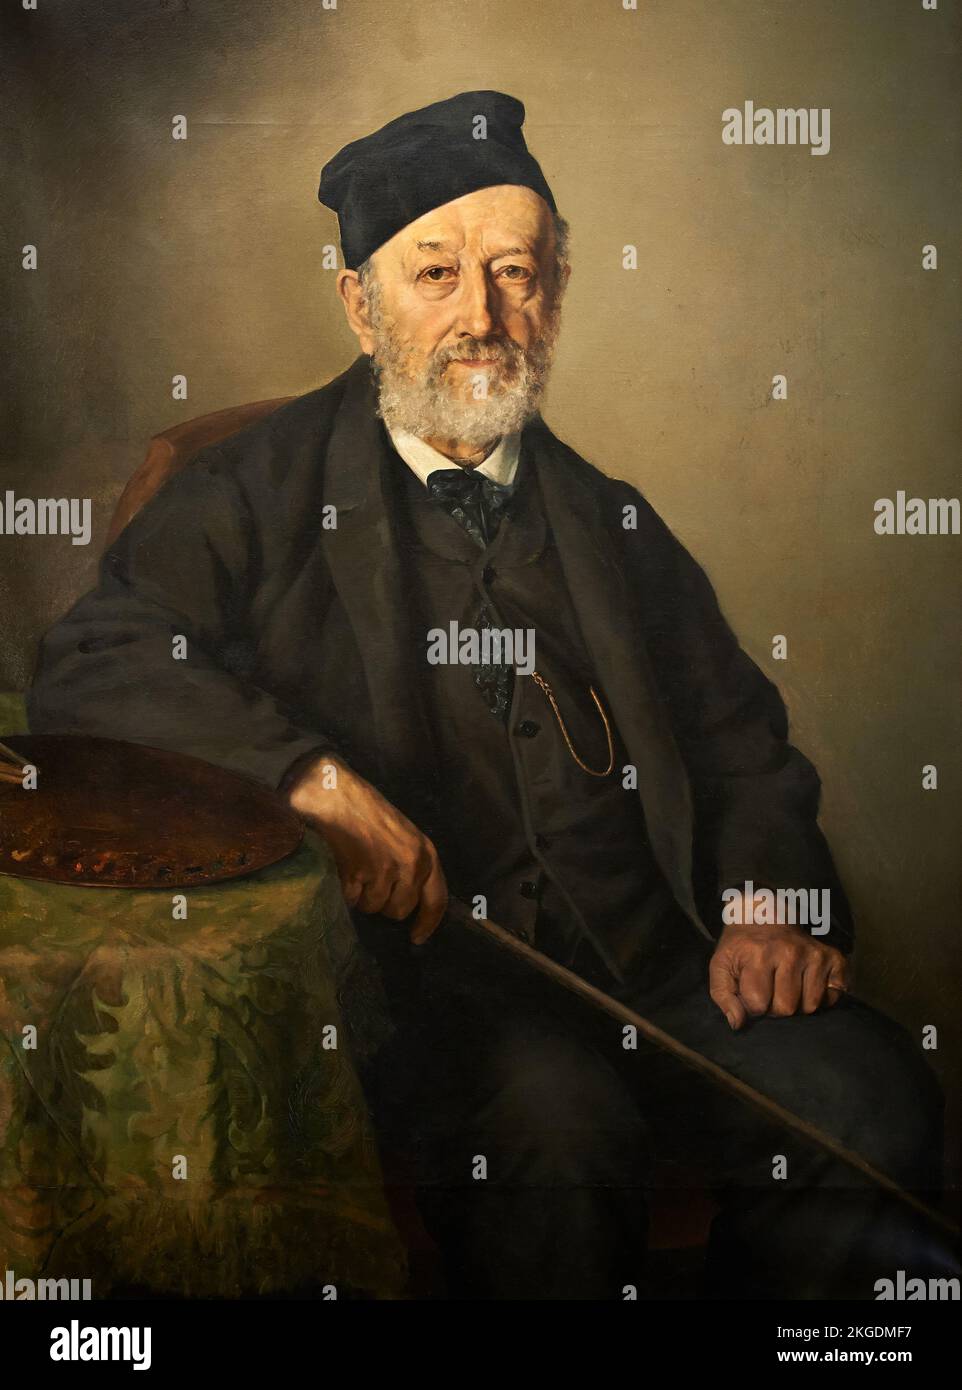 Ritratto del Conte Francesco Caracciolo  - olio su tela - Bernardino Pollinari - XIX secolo  - Piacenza, Galleria Ricci Oddi Stock Photo